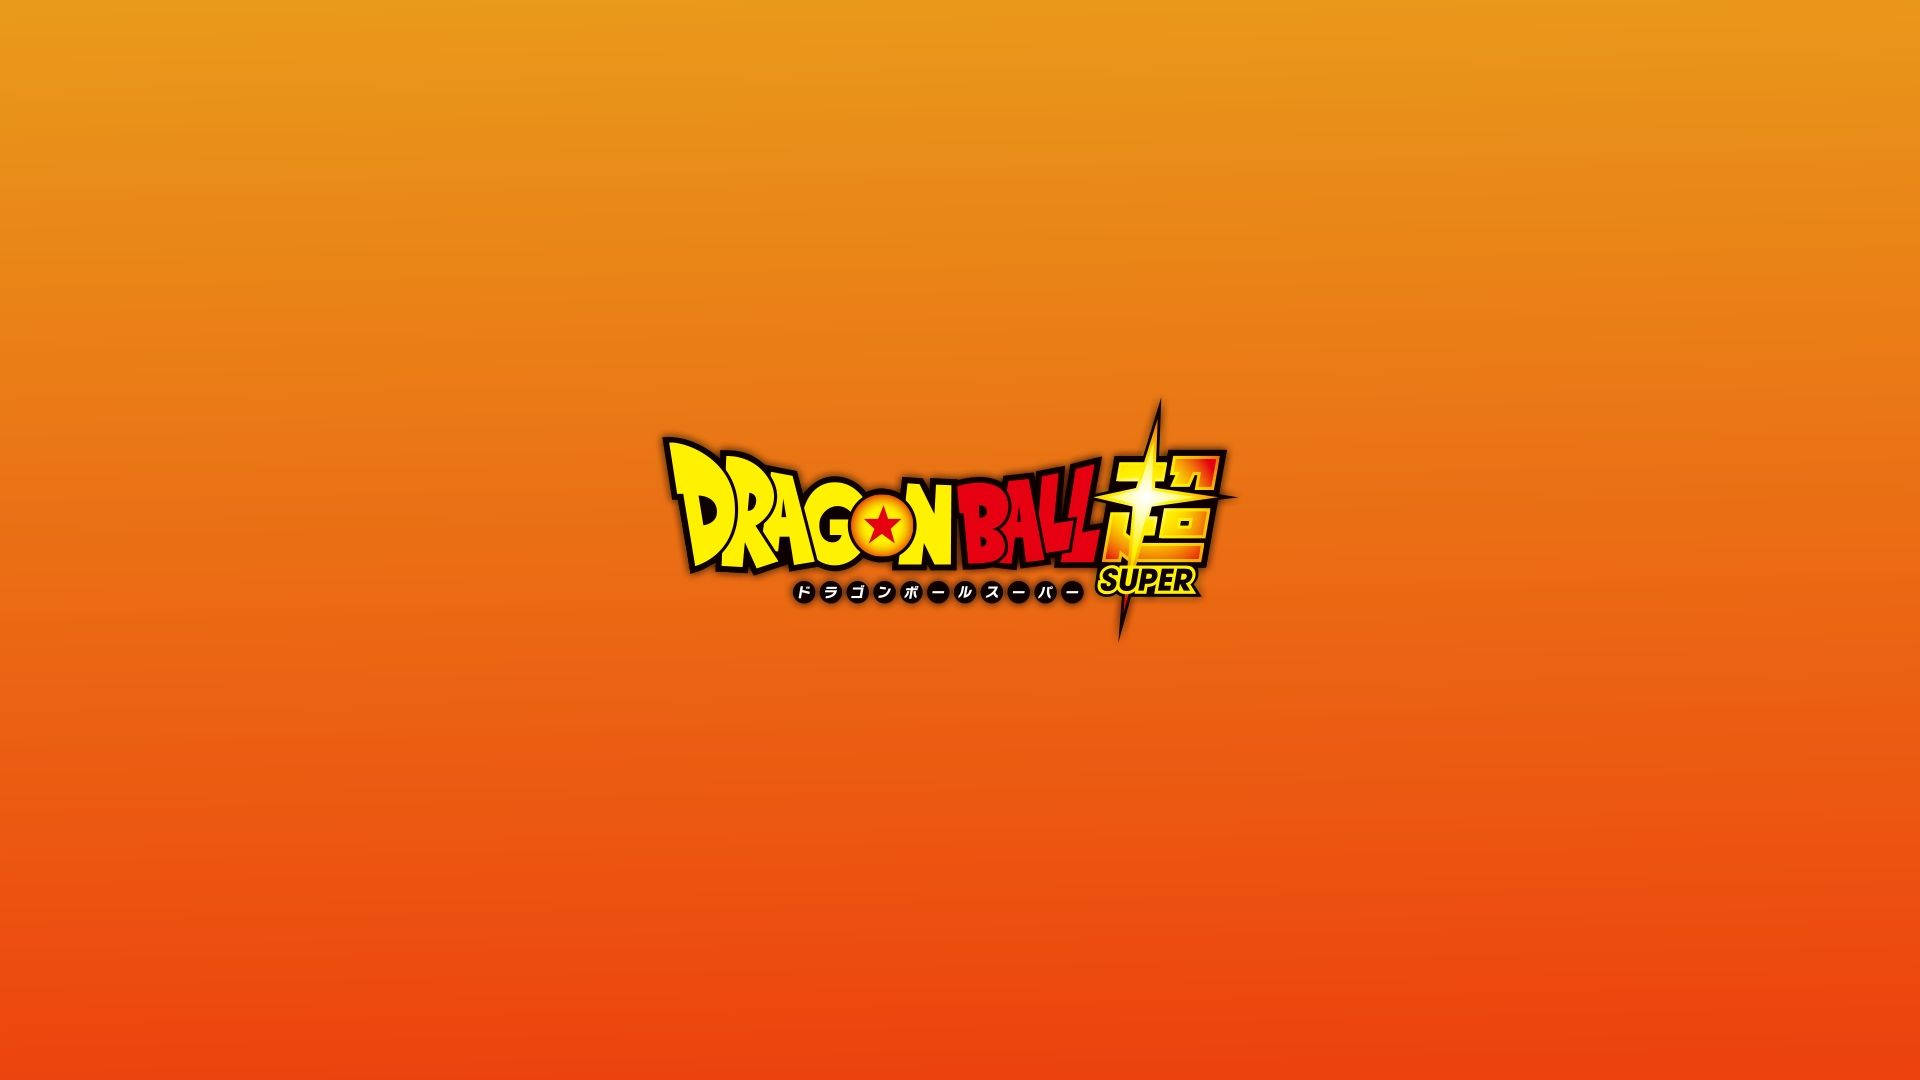 Ellogotipo De La Popular Serie De Anime Dragon Ball Z. Fondo de pantalla